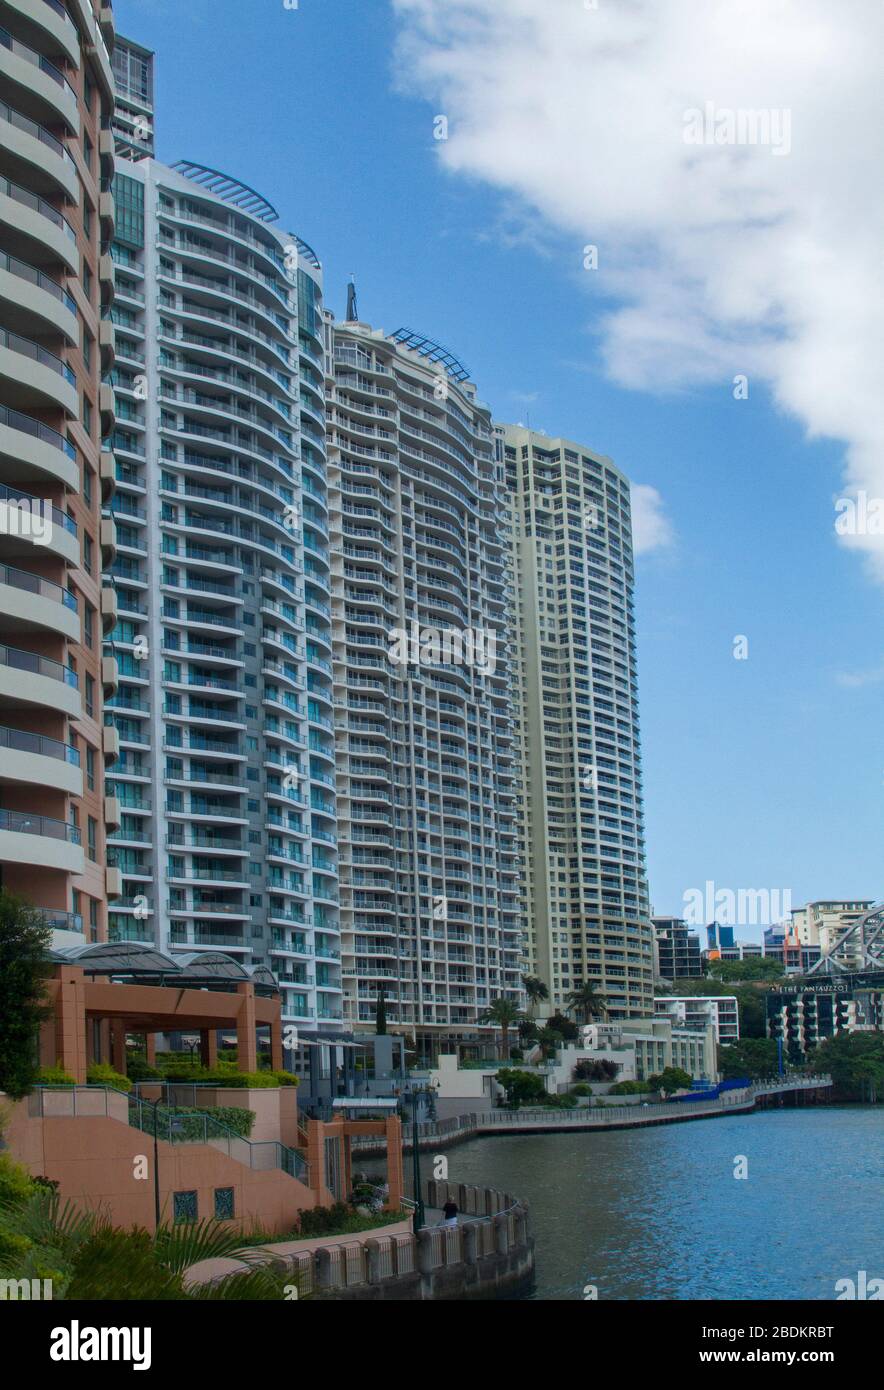 Moderne Hochhäuser, Innenstadtblöcke am Fluss, die in den blauen Himmel ragen und über dem ruhigen Flusswasser in Brisbane, Australien, emporragen Stockfoto